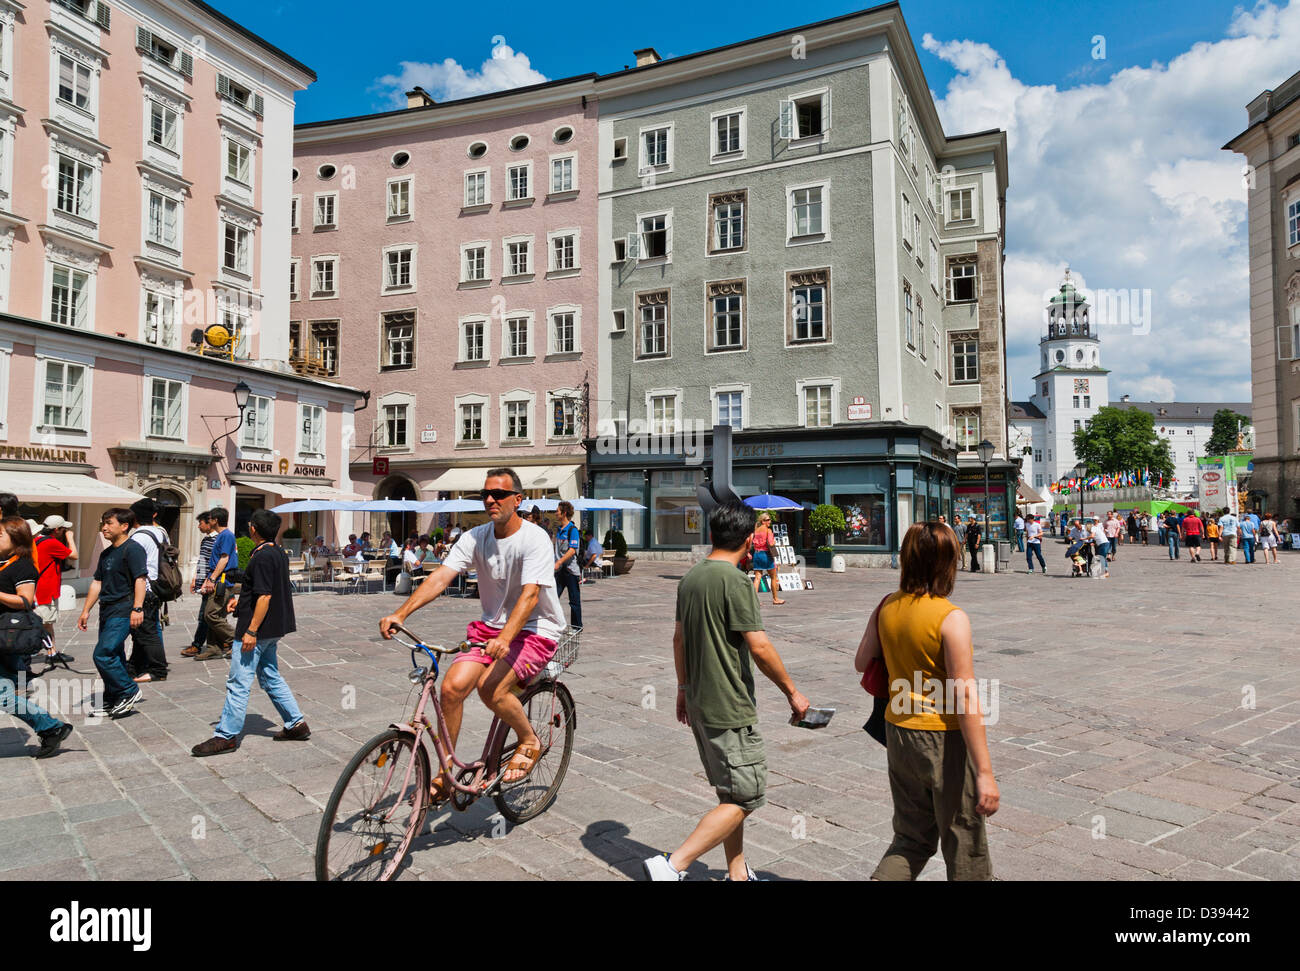 Austria, Salzburg, Altstadt, Old Town, Alter Markt Stock Photo